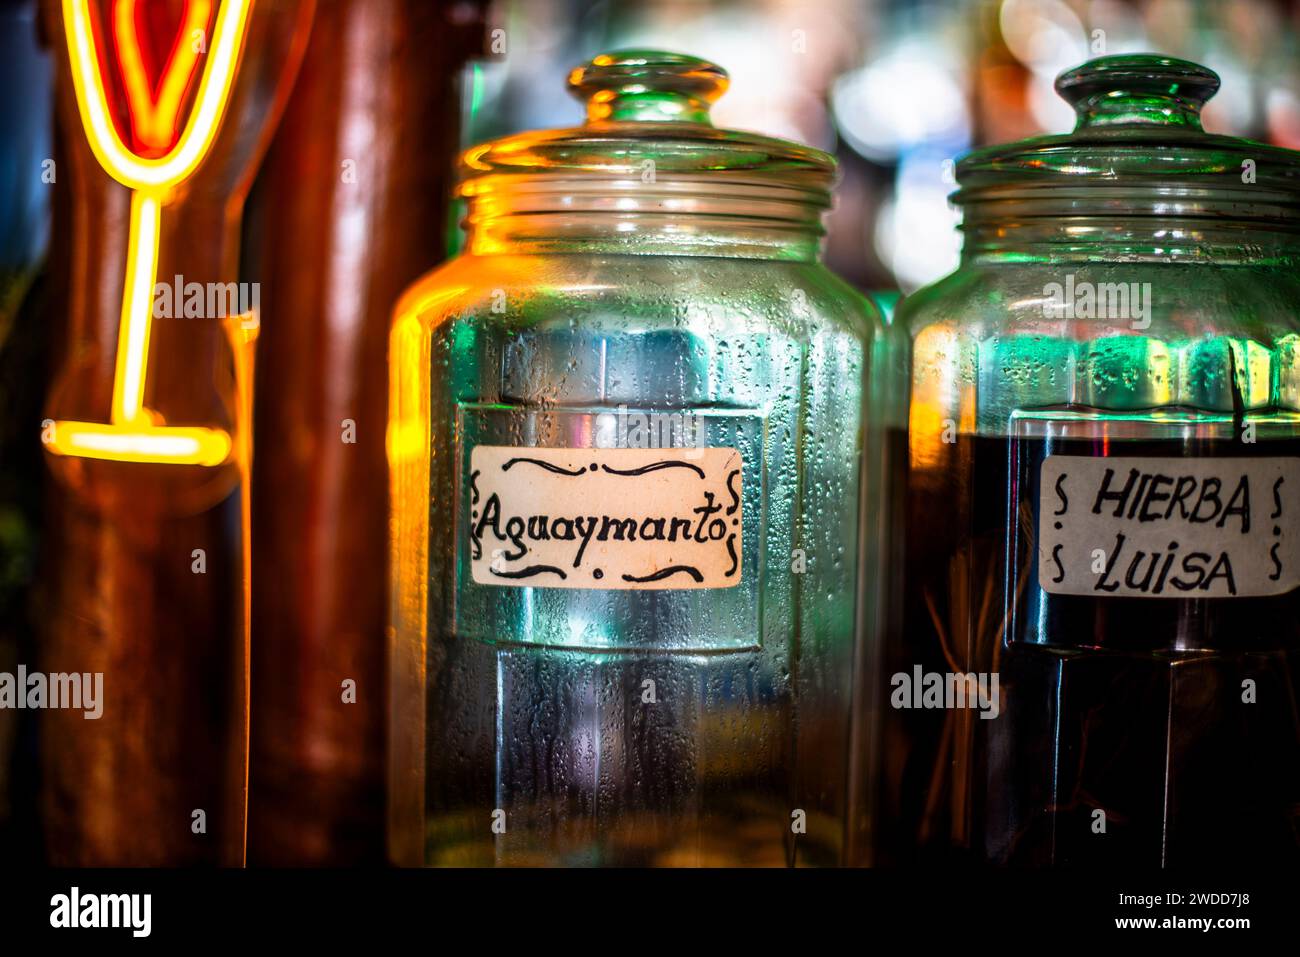 Bottiglia di liquore realizzata con aguaymanto con luce colorata sul retro primo piano della bottiglia con etichetta fotografata in Paracas in Perù Foto Stock